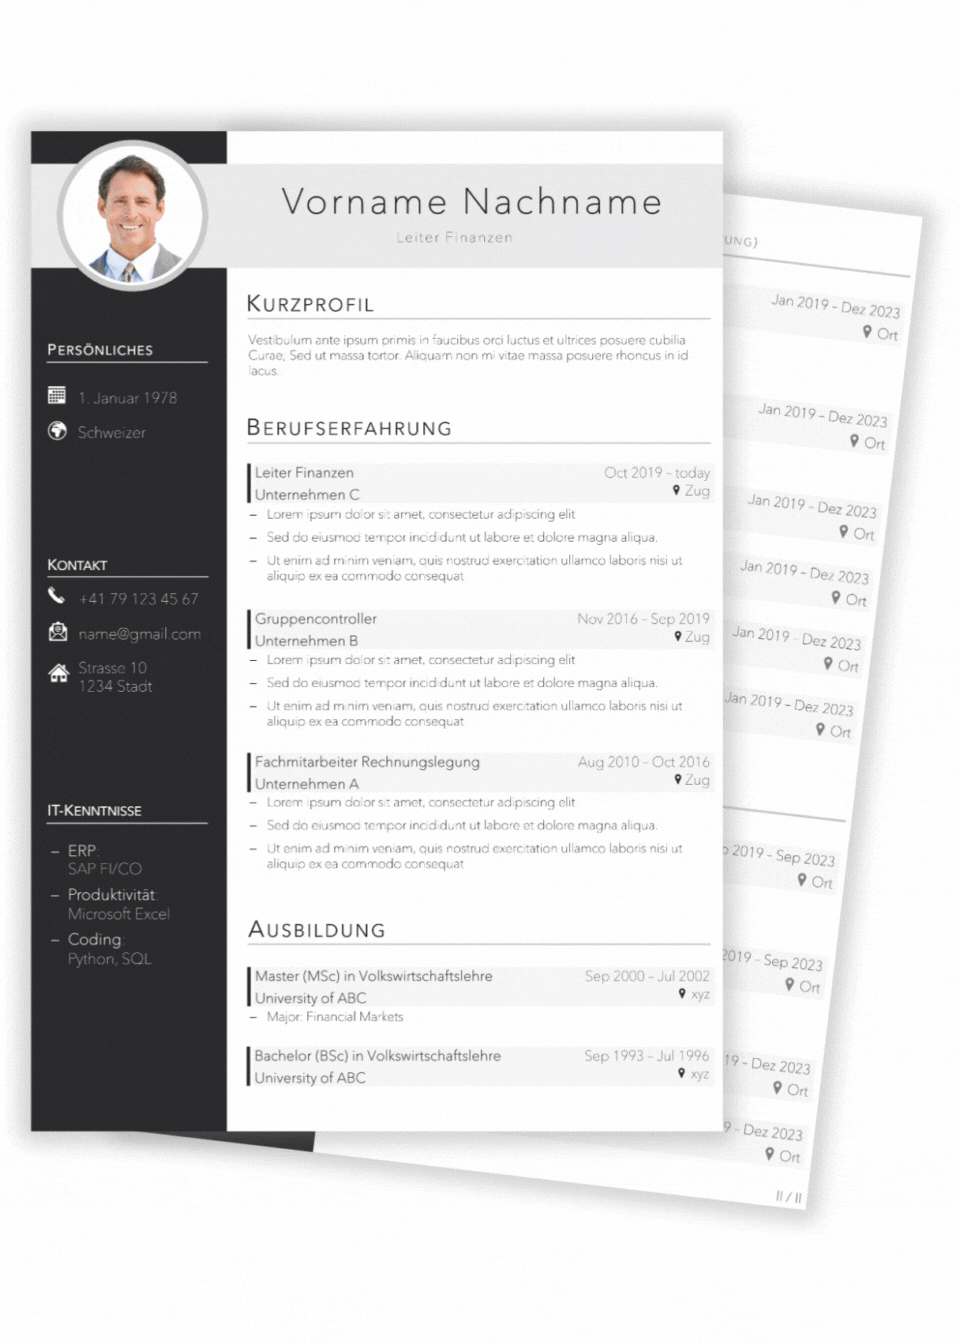 Executive Bewerbungsbundle CV Samples